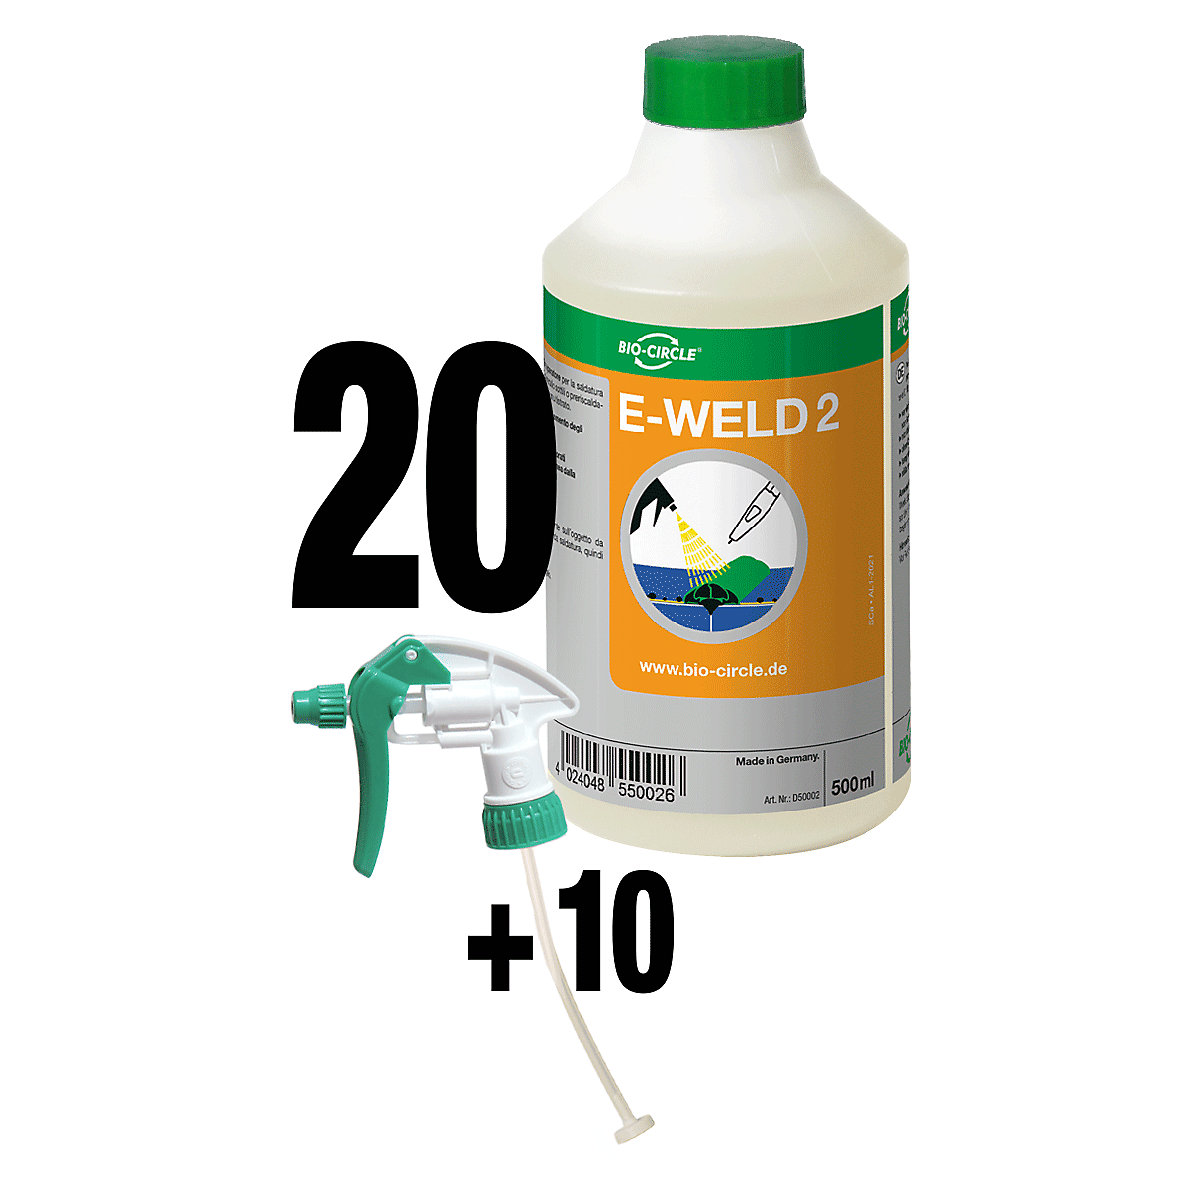 E-WELD 2 hegesztésvédő spray - Bio-Circle